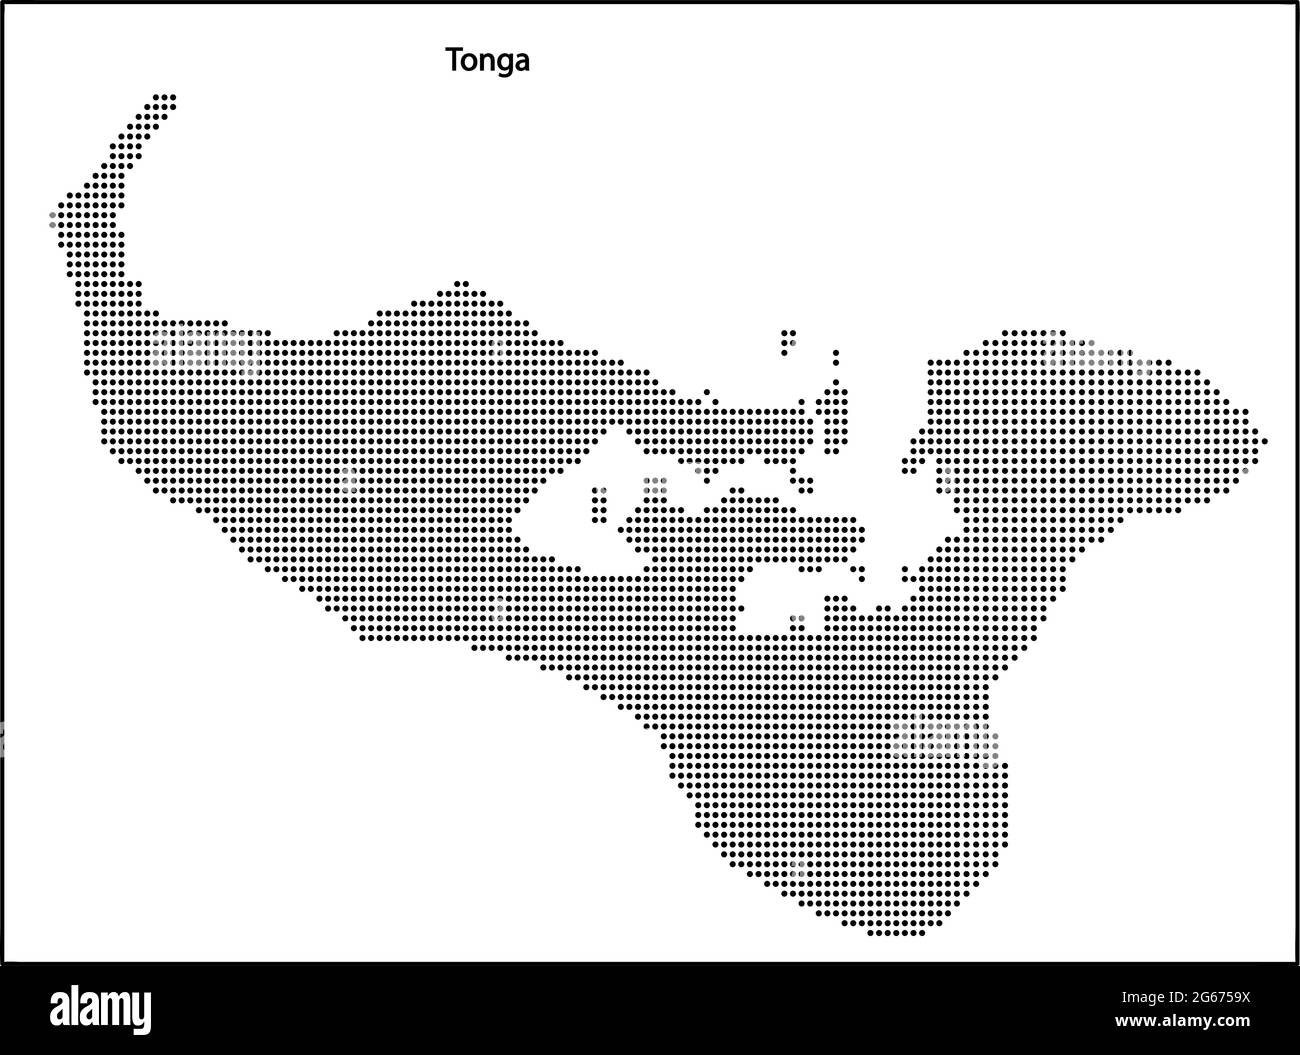 Vektor Halbton gepunktete Karte von Tonga Land für Ihr Design, Travel Illustration Konzept. Stock Vektor